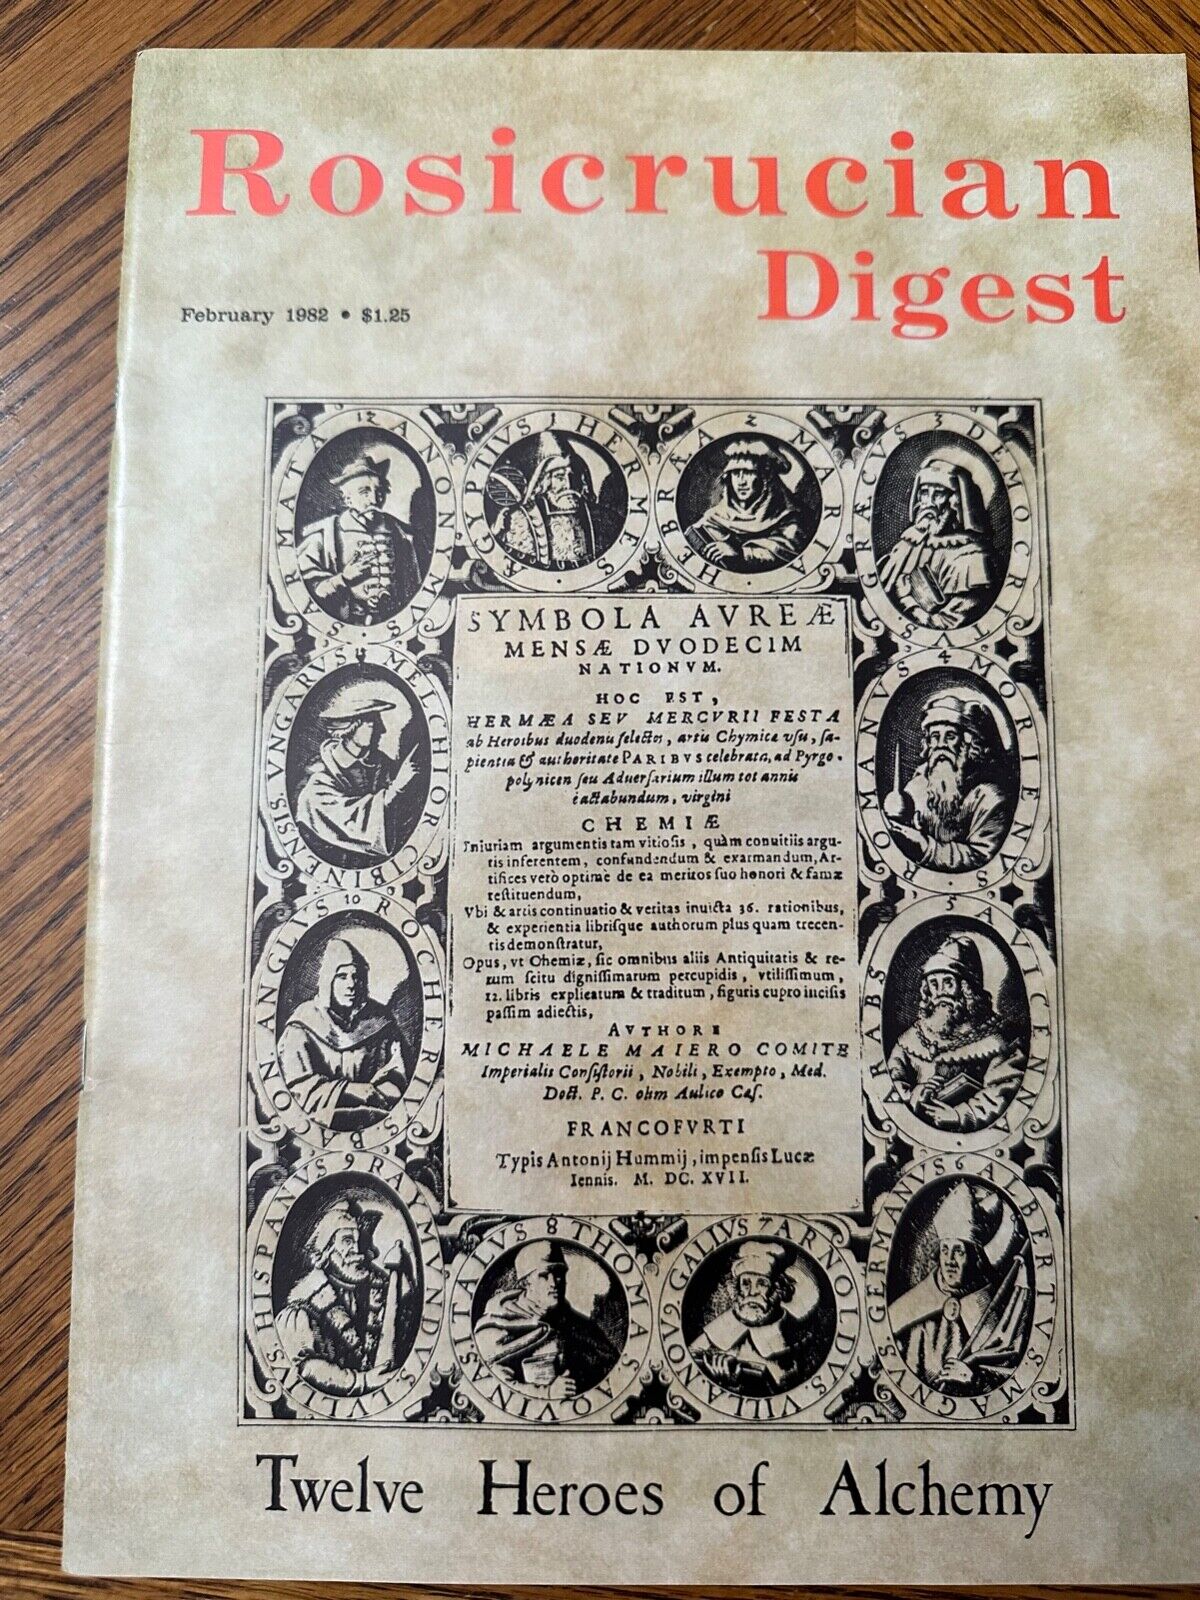 Rosicrucian Digest AMORC Mysticism Chymistry Alchemy Feb 1982 